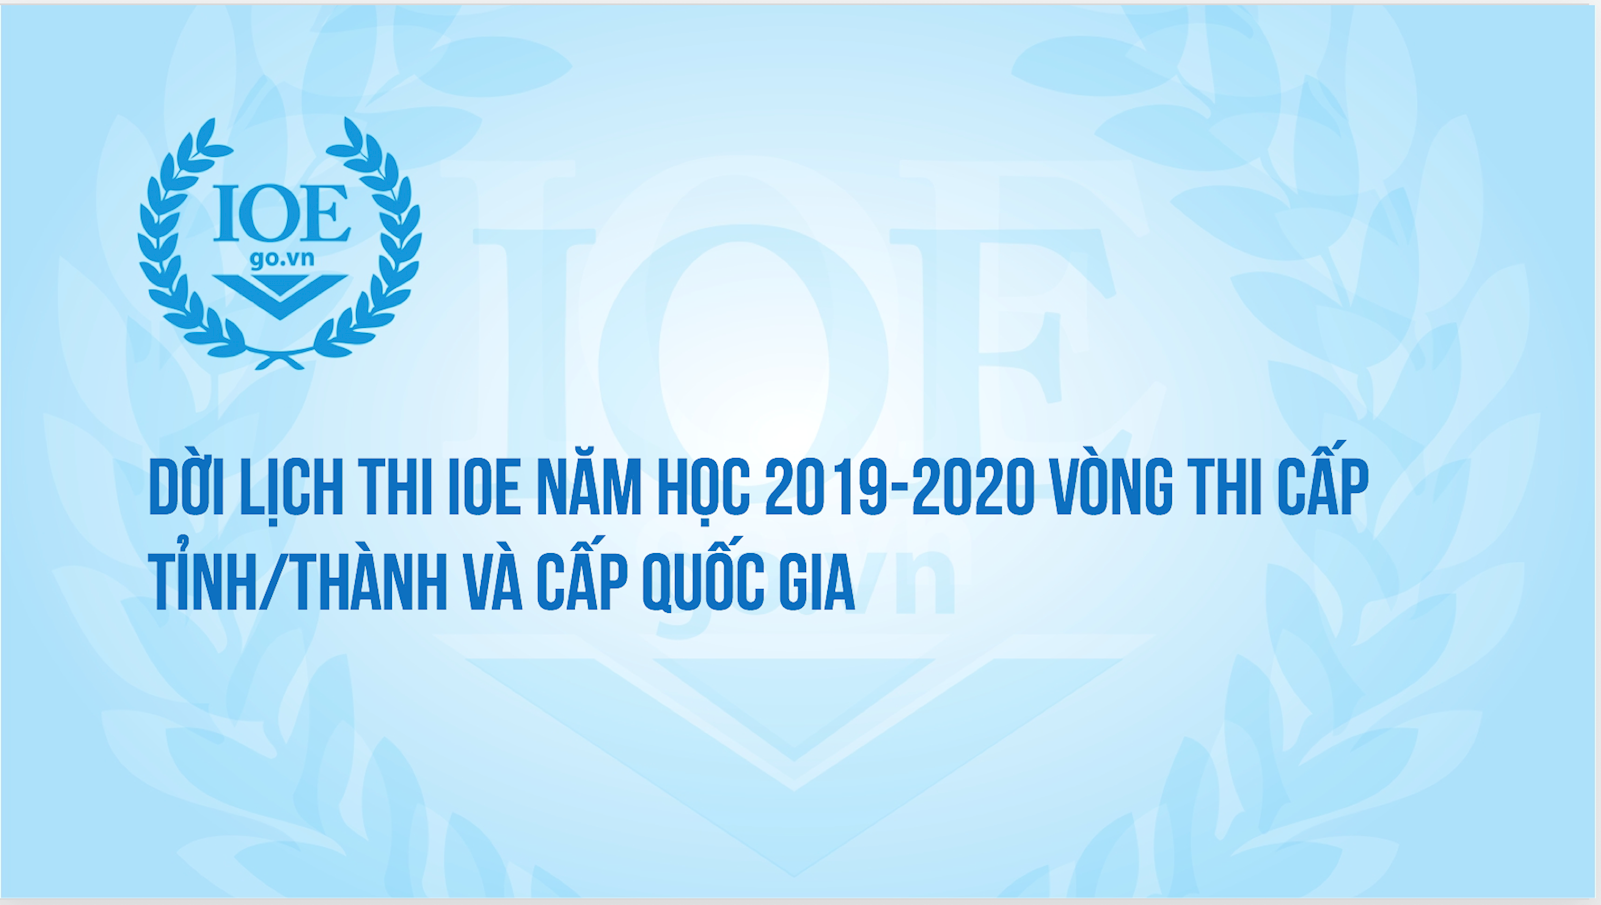 Dời lịch thi IOE năm học 2019-2020 vòng thi cấp Tỉnh/Thành và cấp Quốc gia